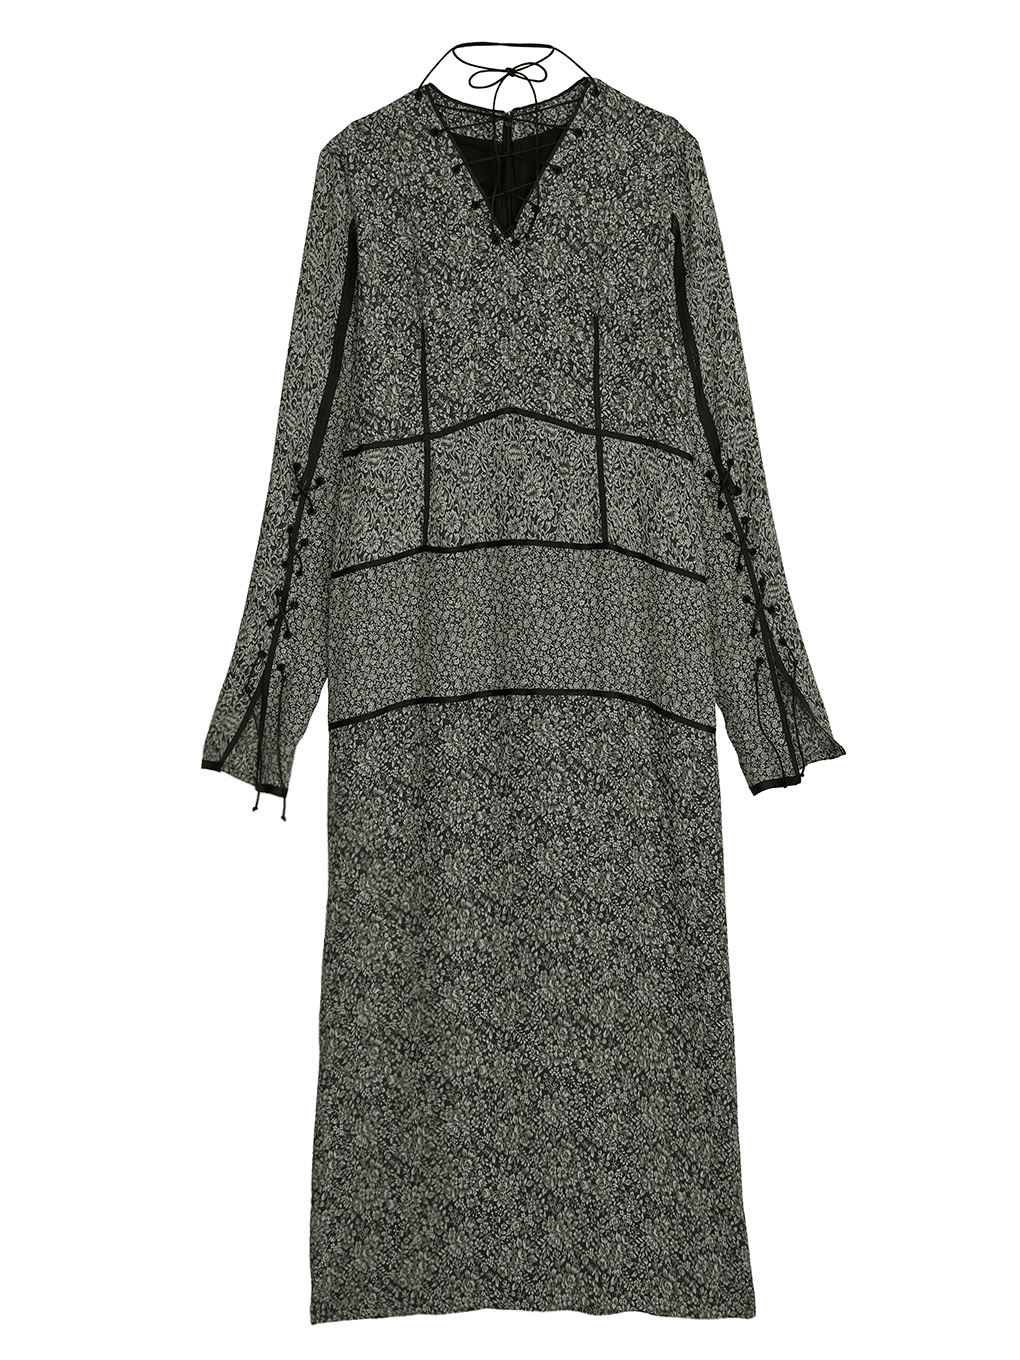 24500円はいかがですかameri vintage  dress